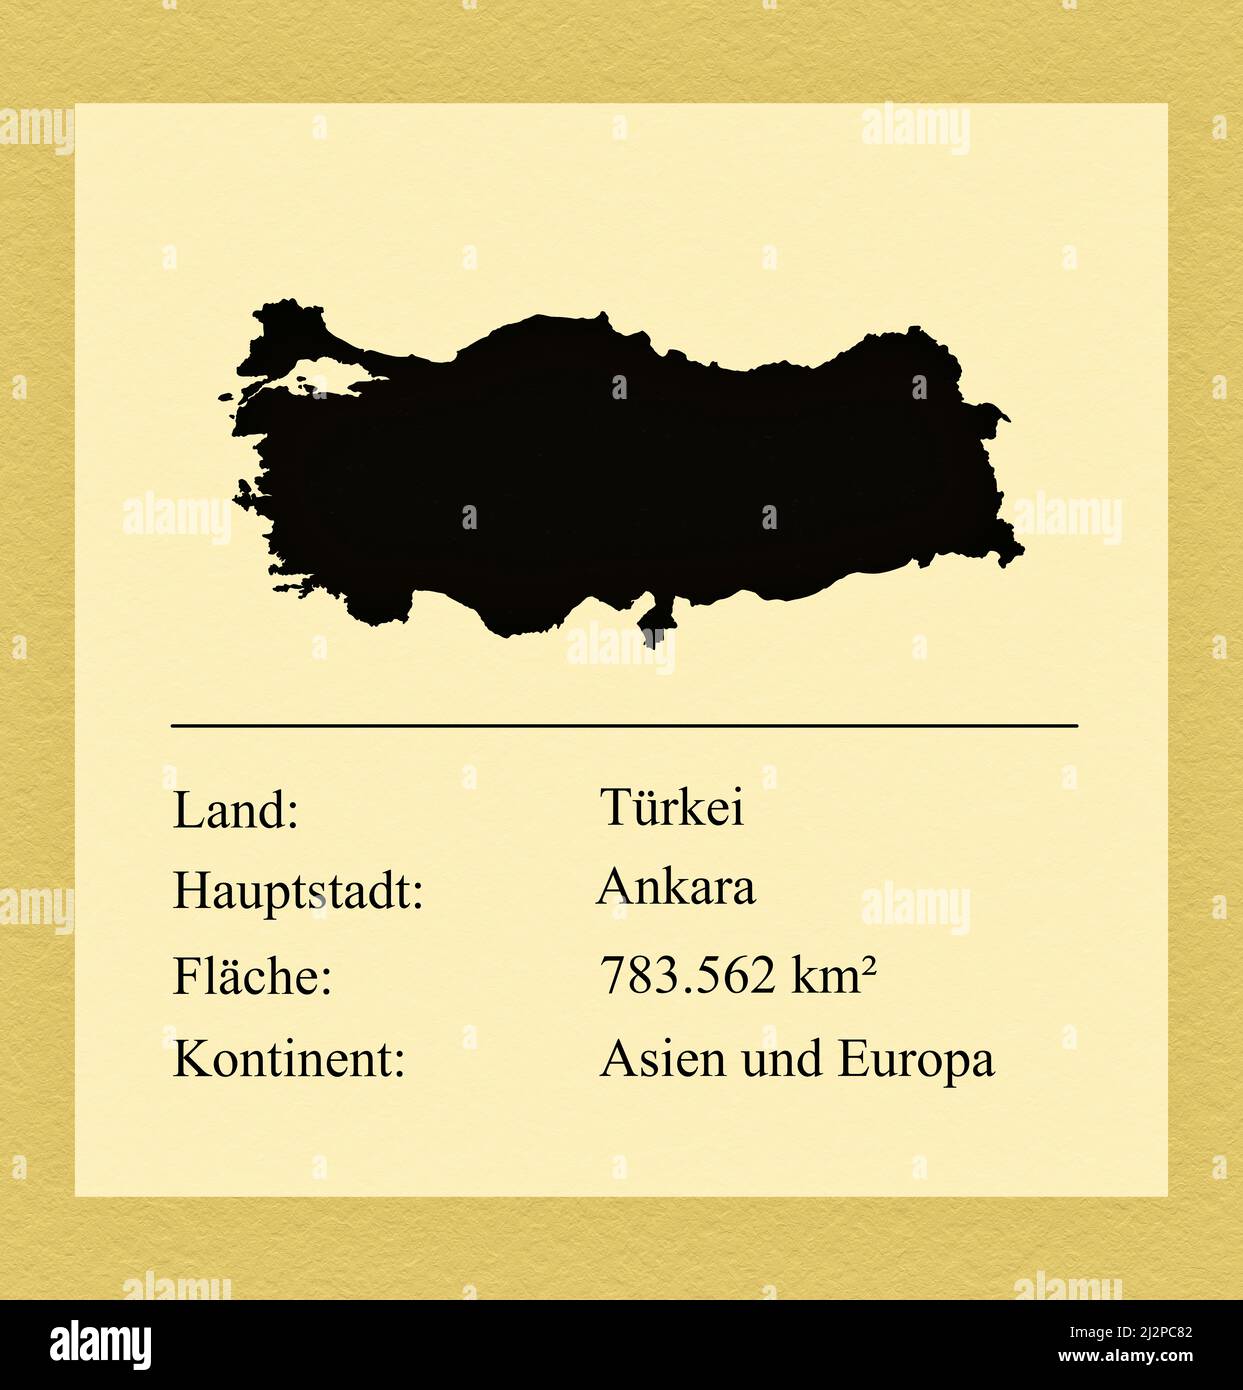 Umrisse des Landes Türkei, darunter ein kleiner Steckbrief mit Ländernamen, Hauptstadt, Fläche und Kontinent Foto de stock